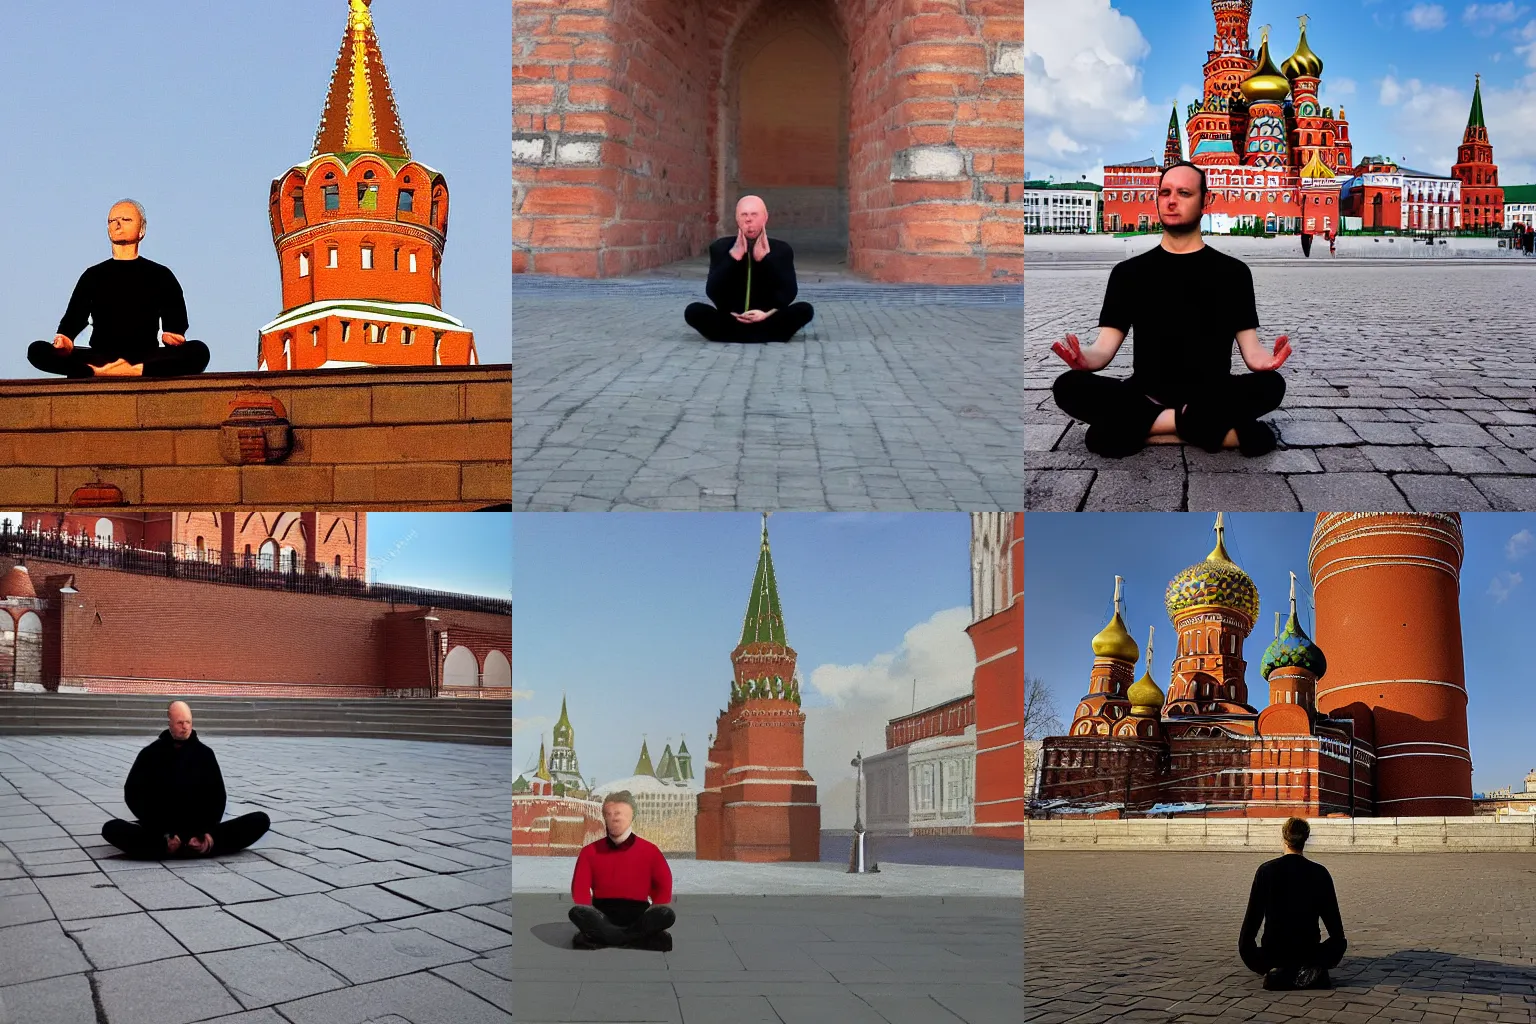 Prompt: Viktor Pelevin meditates against the background of the Kremlin